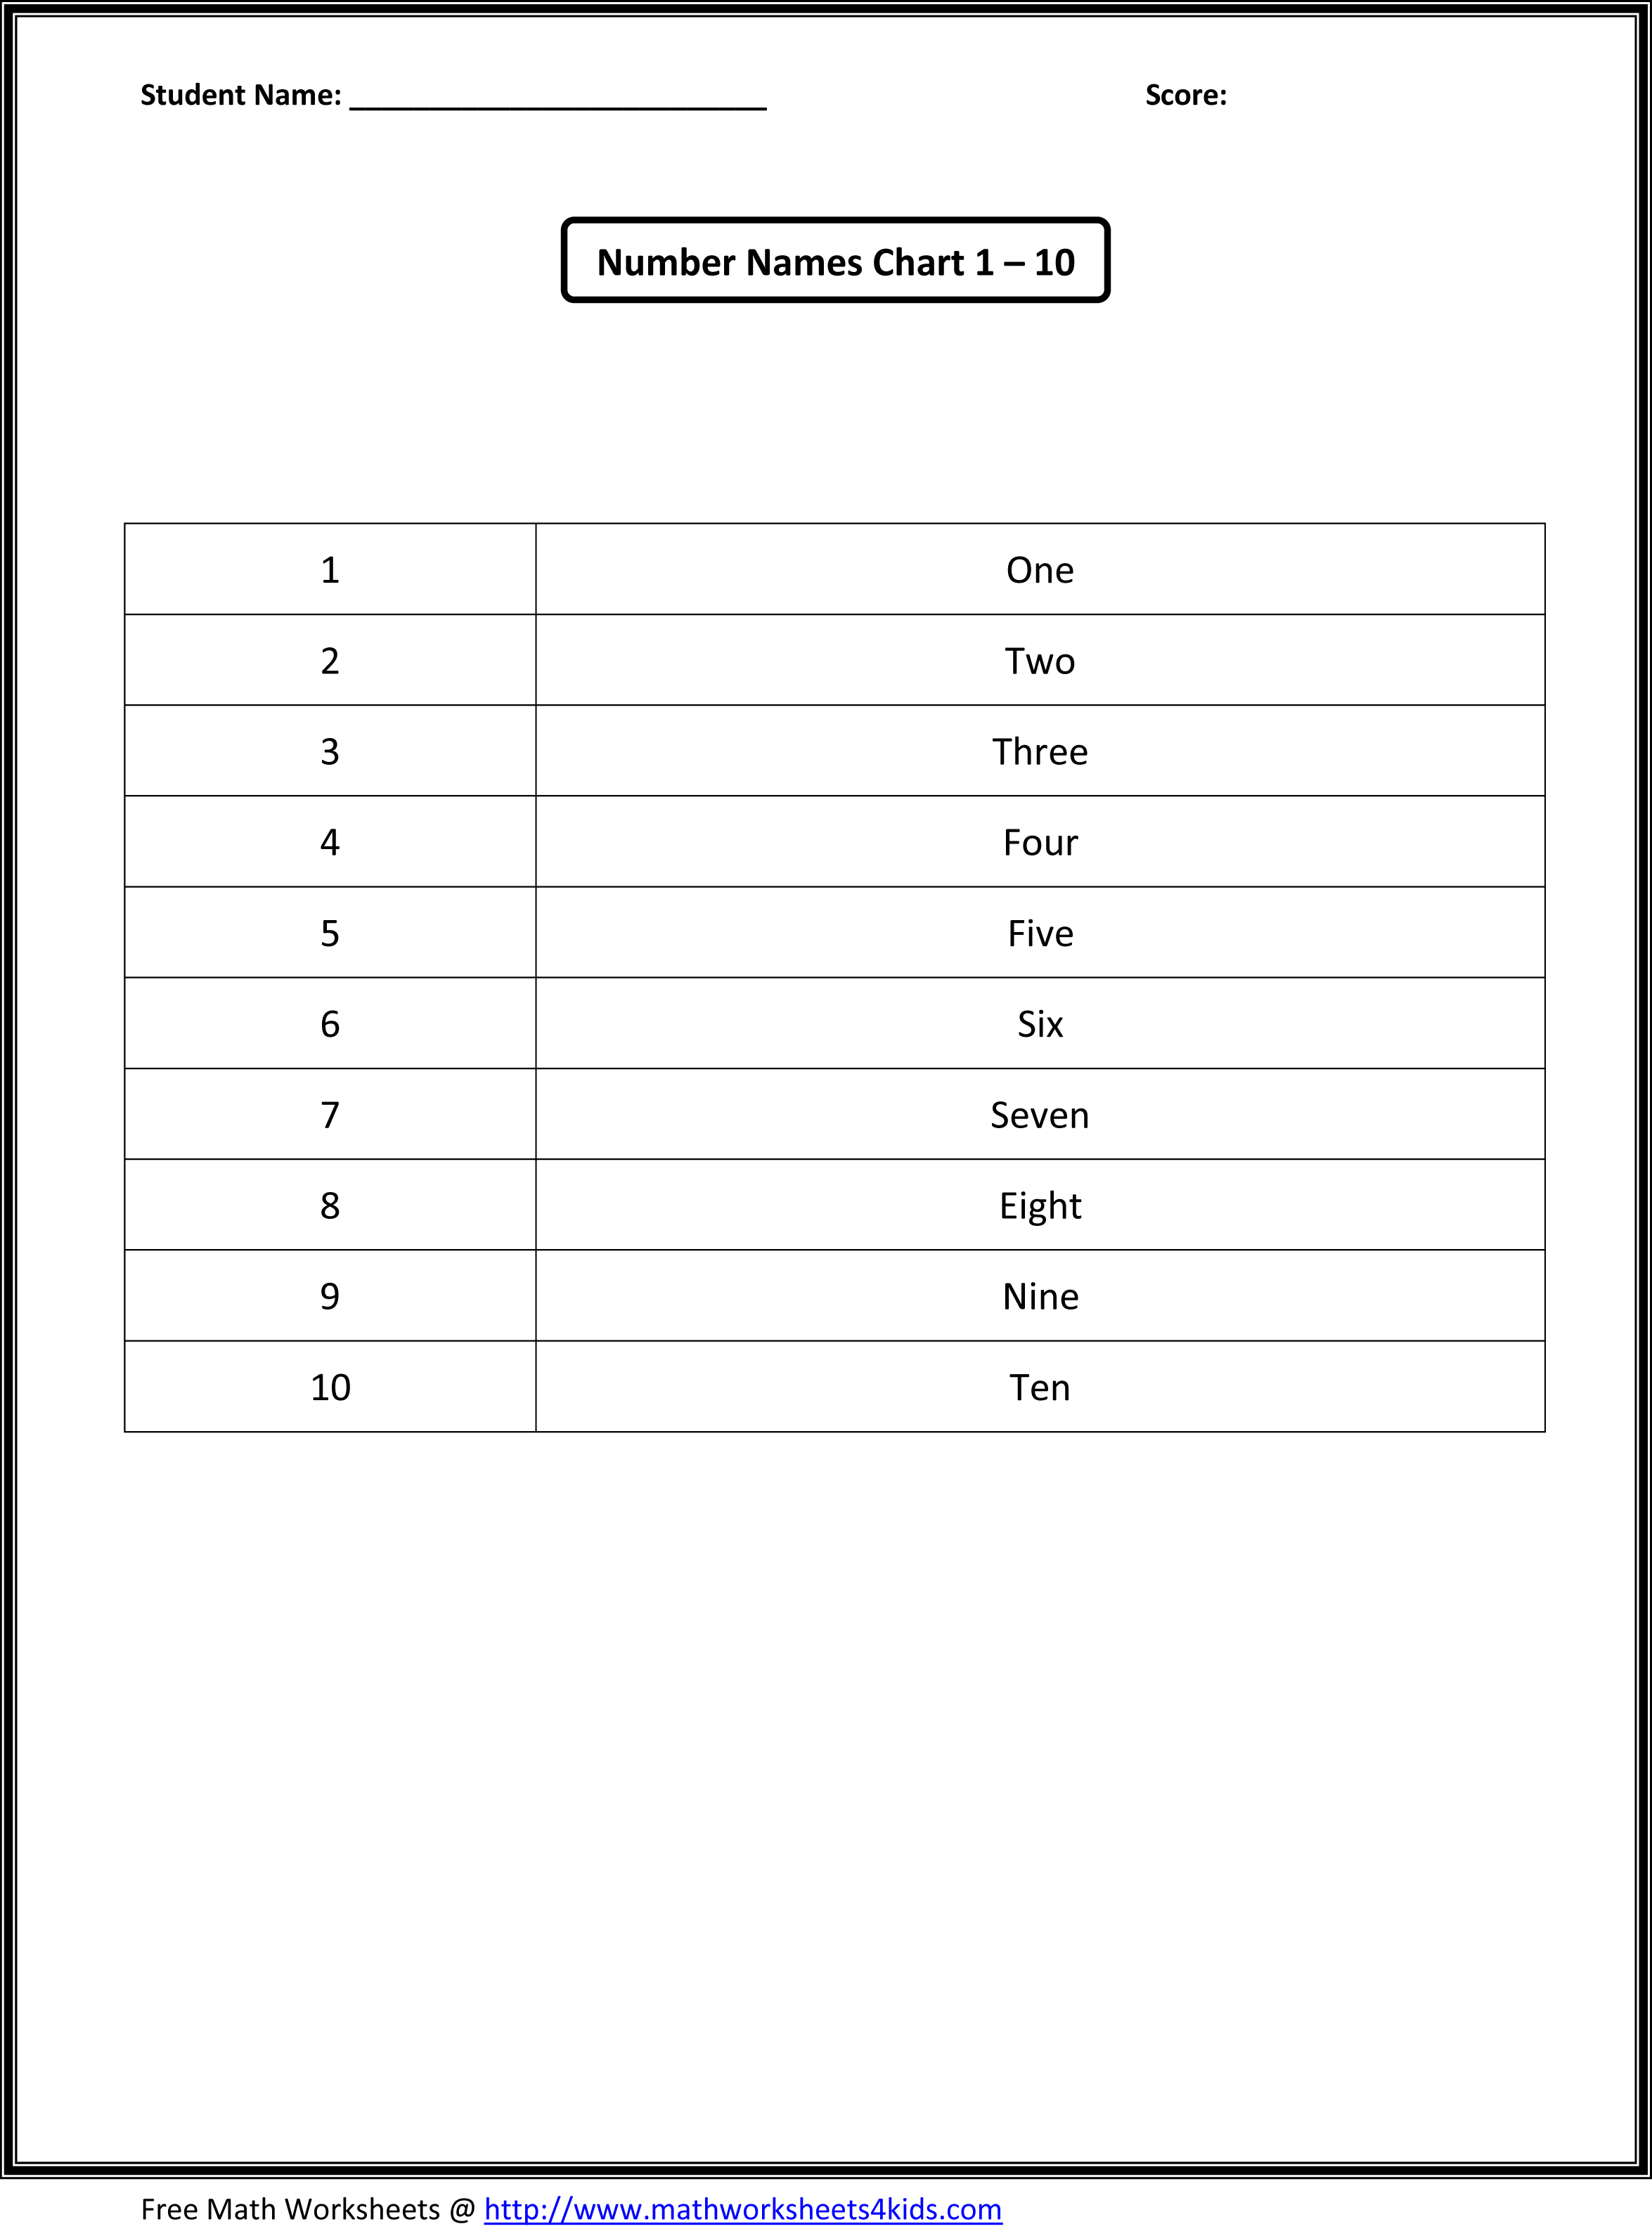 15-best-images-of-blank-kindergarten-number-worksheets-1-20-blank